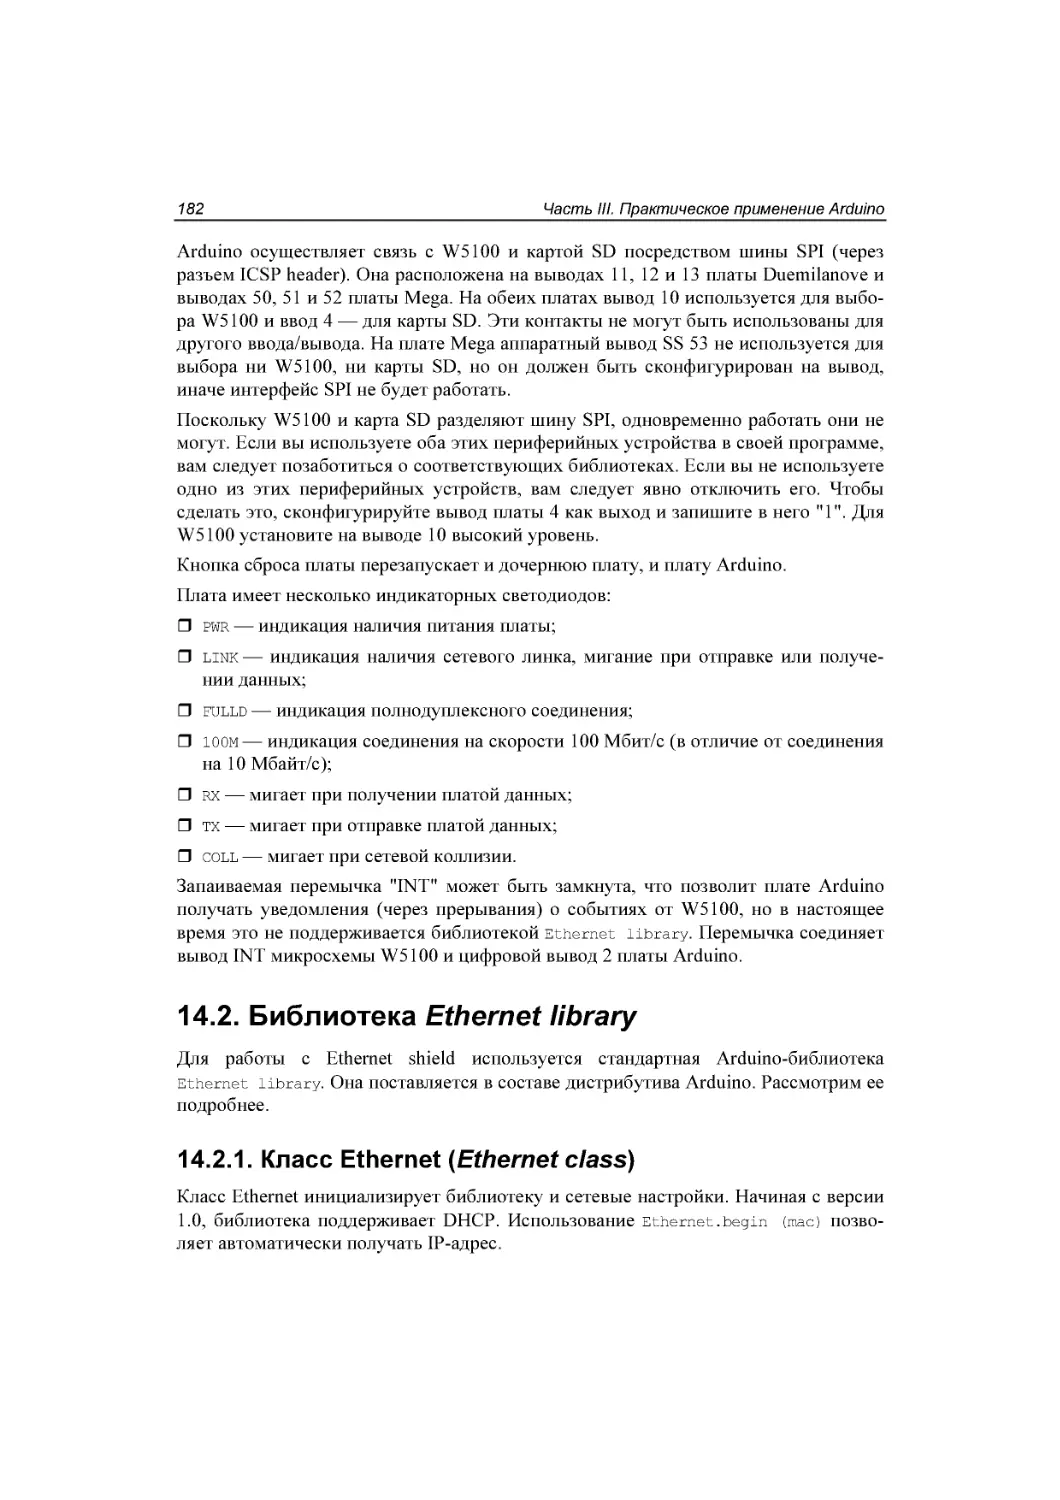 ﻿14.2. Библиотека Ethernet library